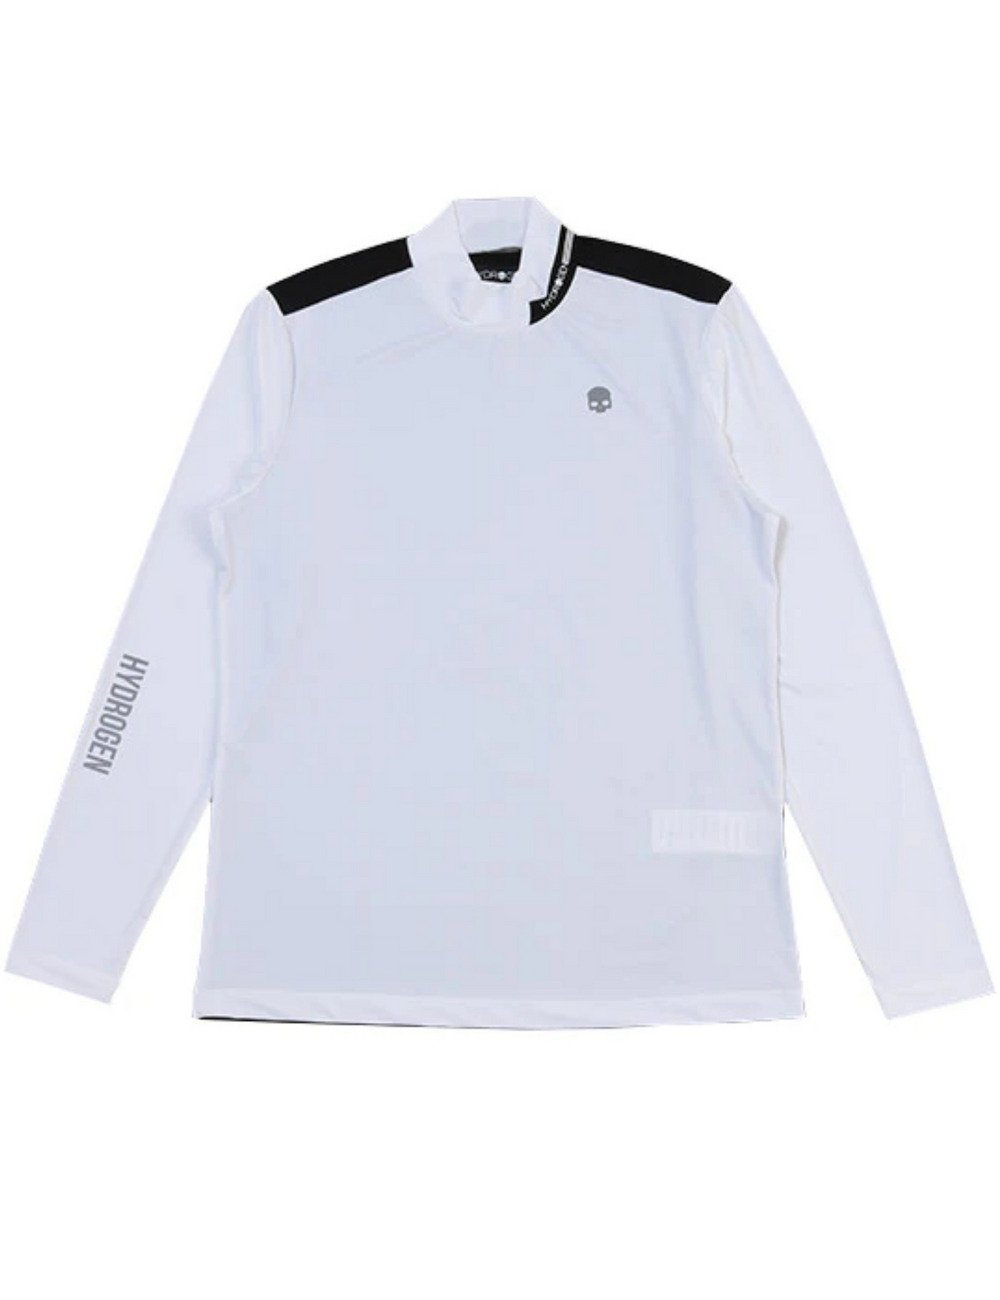 ゴルフロールネックシャツ(長袖)/GOLF ROLL NECK LS 詳細画像 ホワイト 1